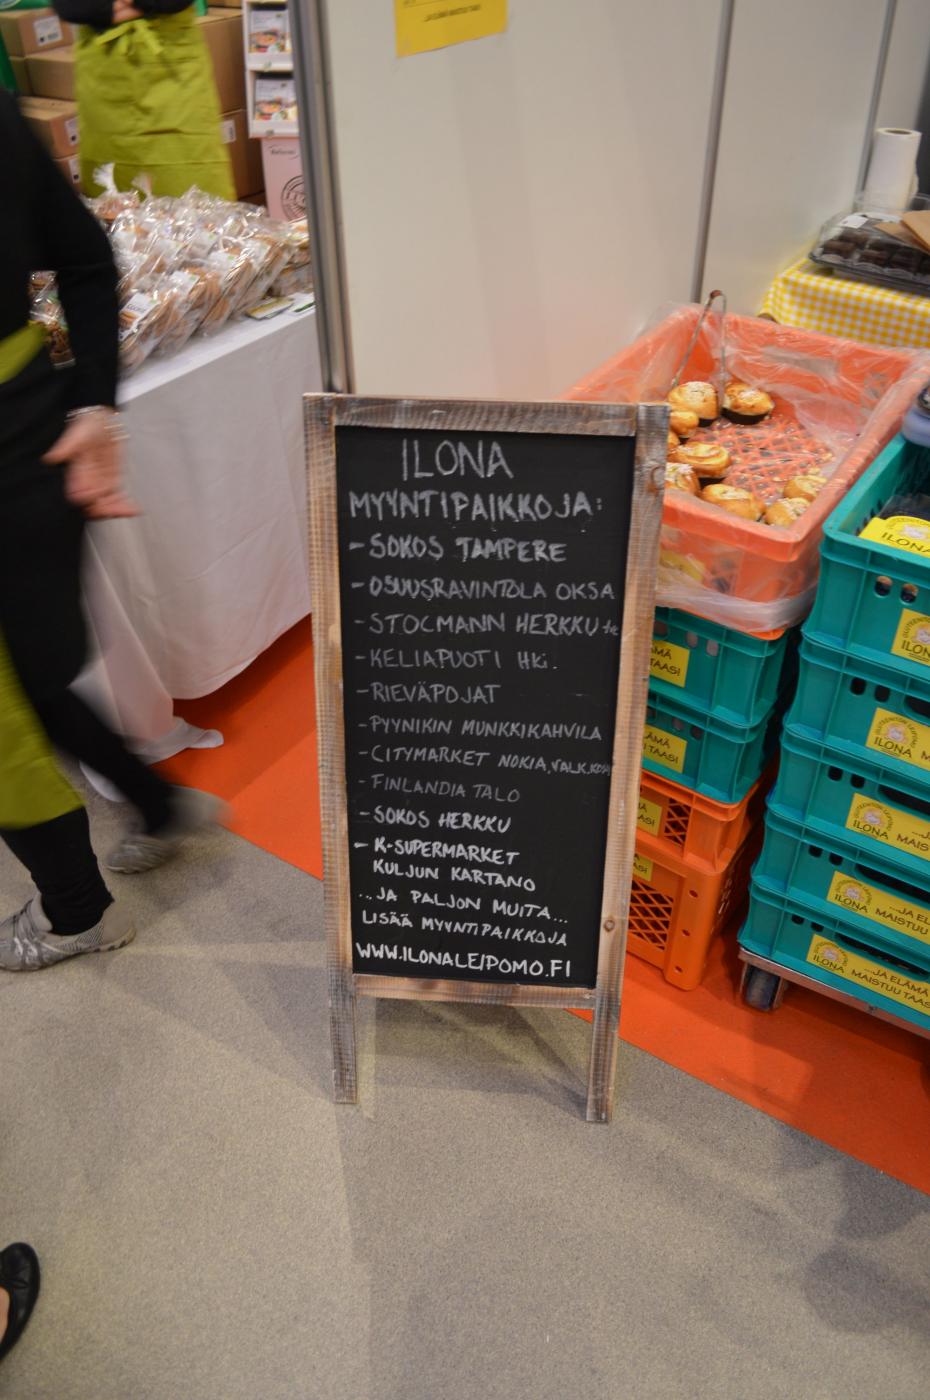 Gluteeniton leipomo Ilonan tuotteiden myyntipaikkoja.